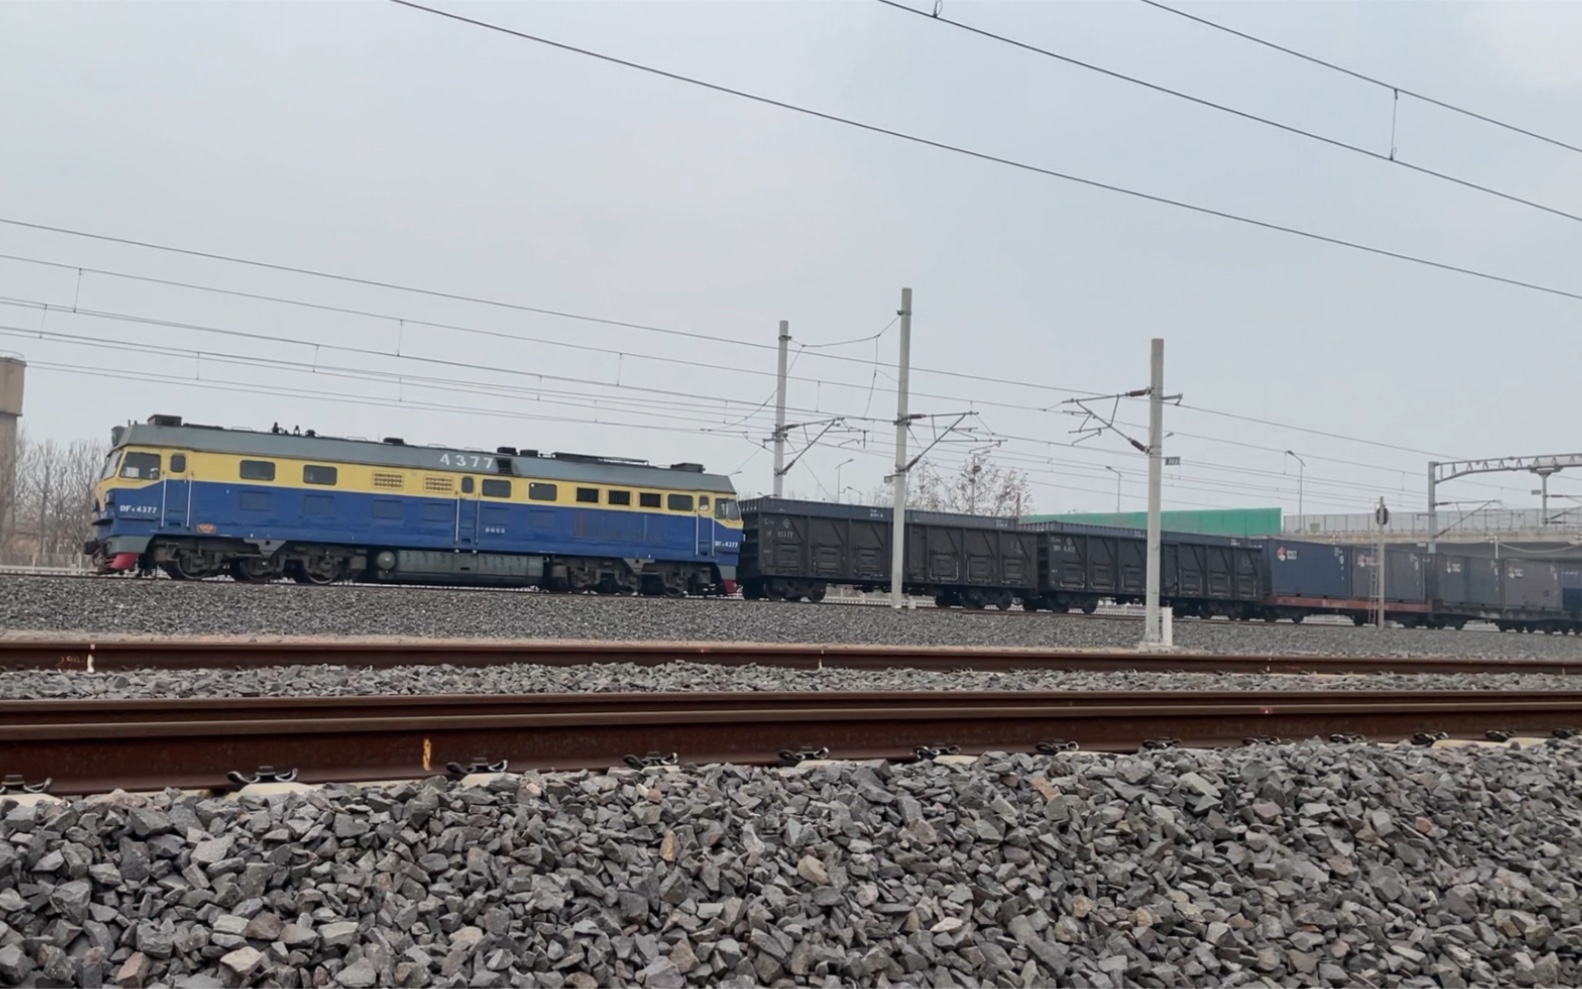 济局青段df4c4377牵引胶济线下行小运转列车与运行于青荣城际铁路crh2